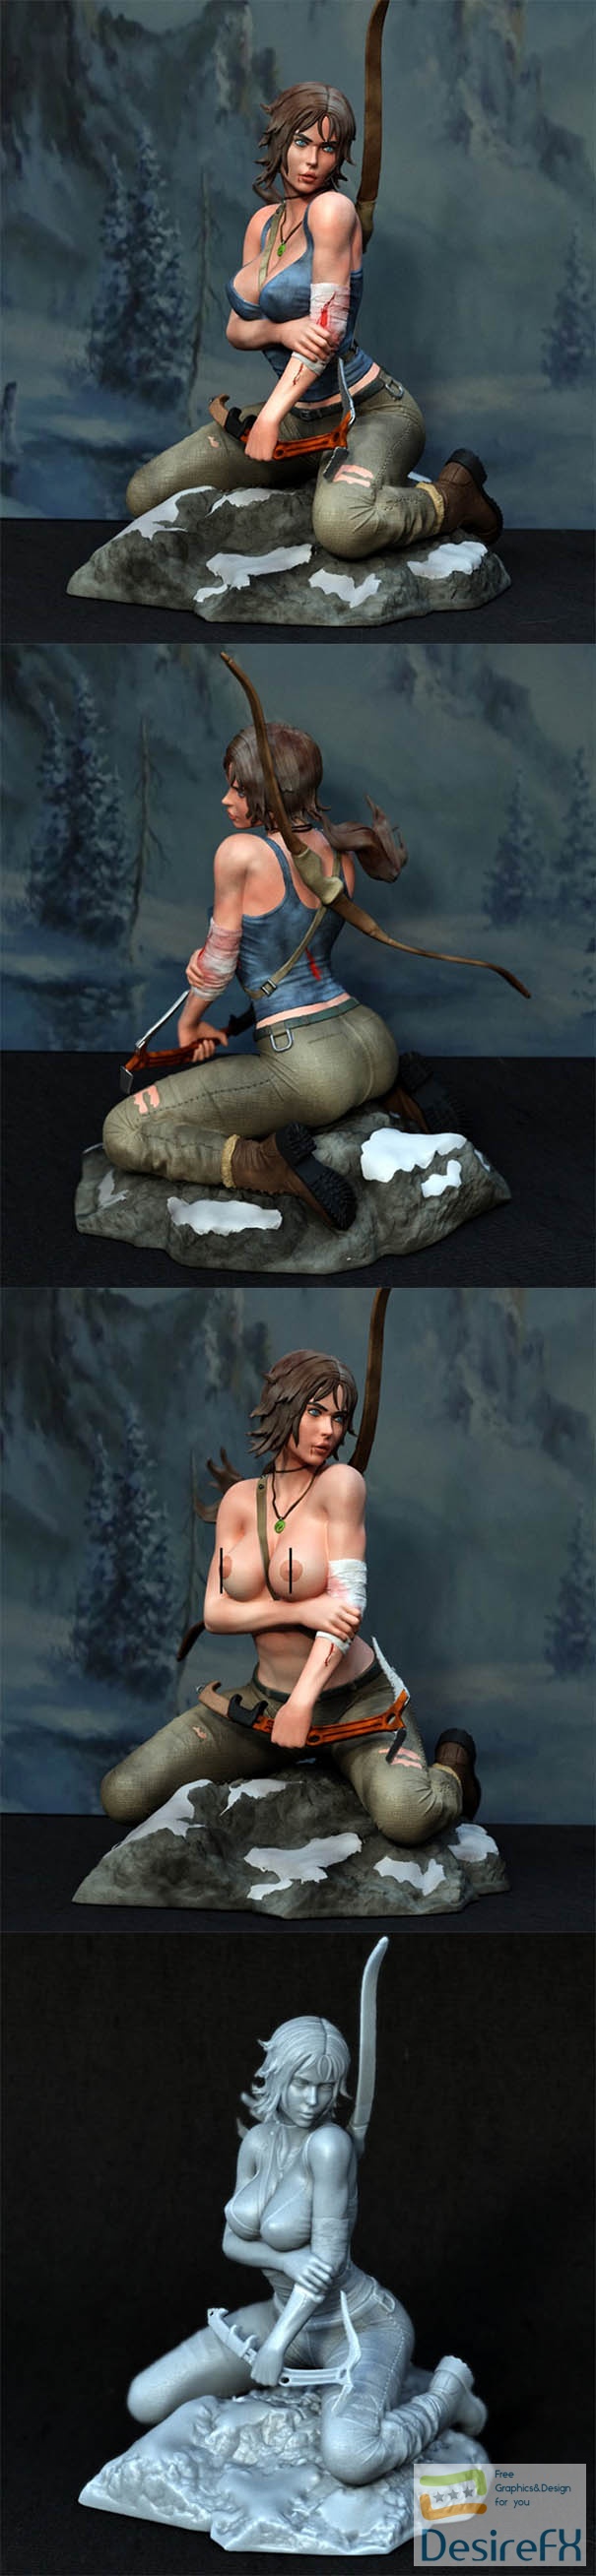 Lara Croft from Tomb Raider – 3D Print